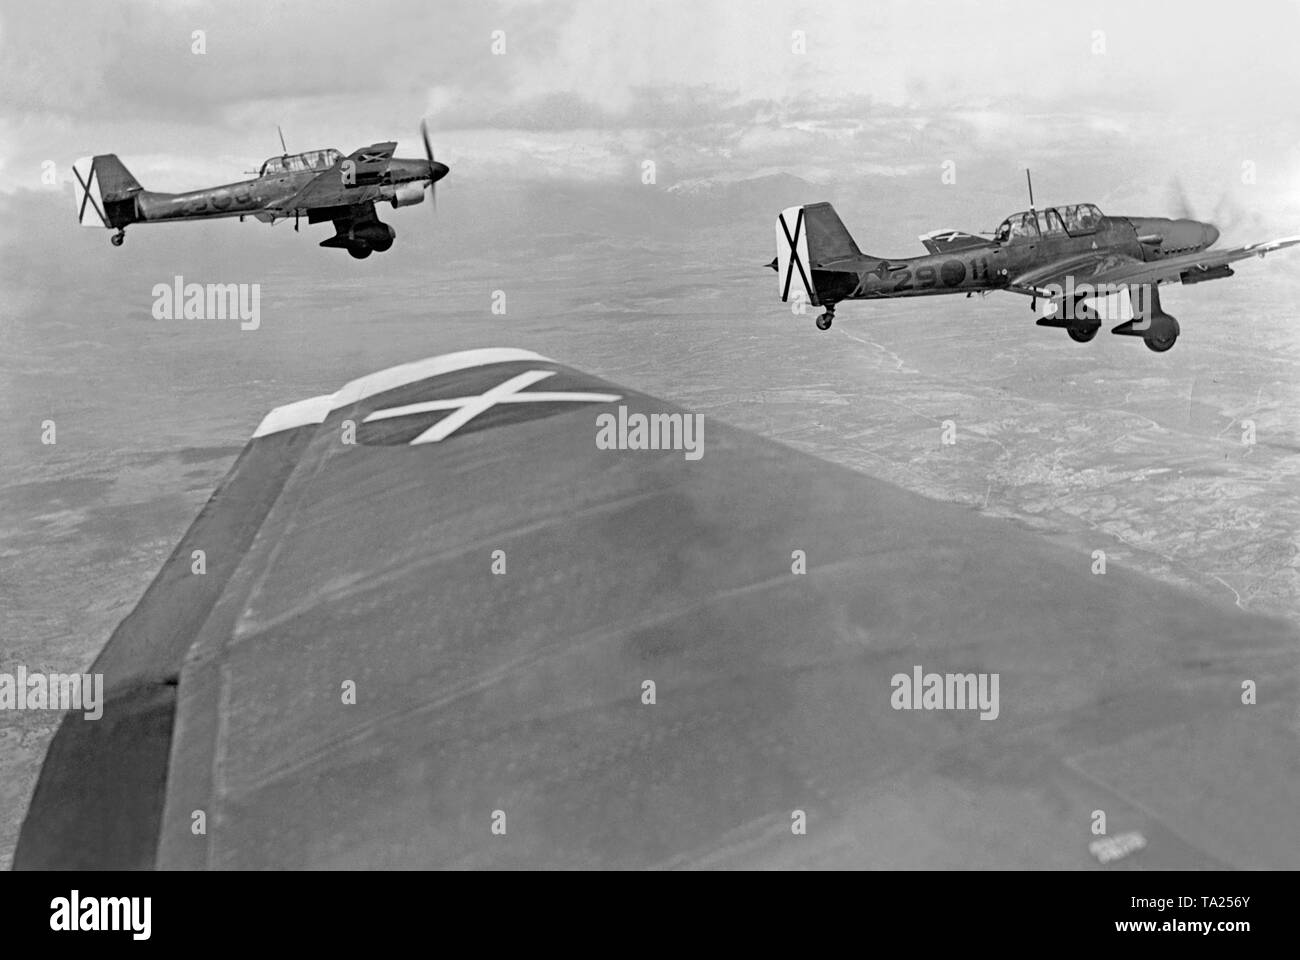 Photo de deux (Allemand) Stuka Junker Ju 87 (87) bombers pendant leur vol echelon sur le front ouest de Brunete Madrid pendant la bataille de Brunete en juillet, 1937. La photo a été prise à partir de l'un des avions. Les cocardes de la légion Condor sont bien perceptibles. Banque D'Images